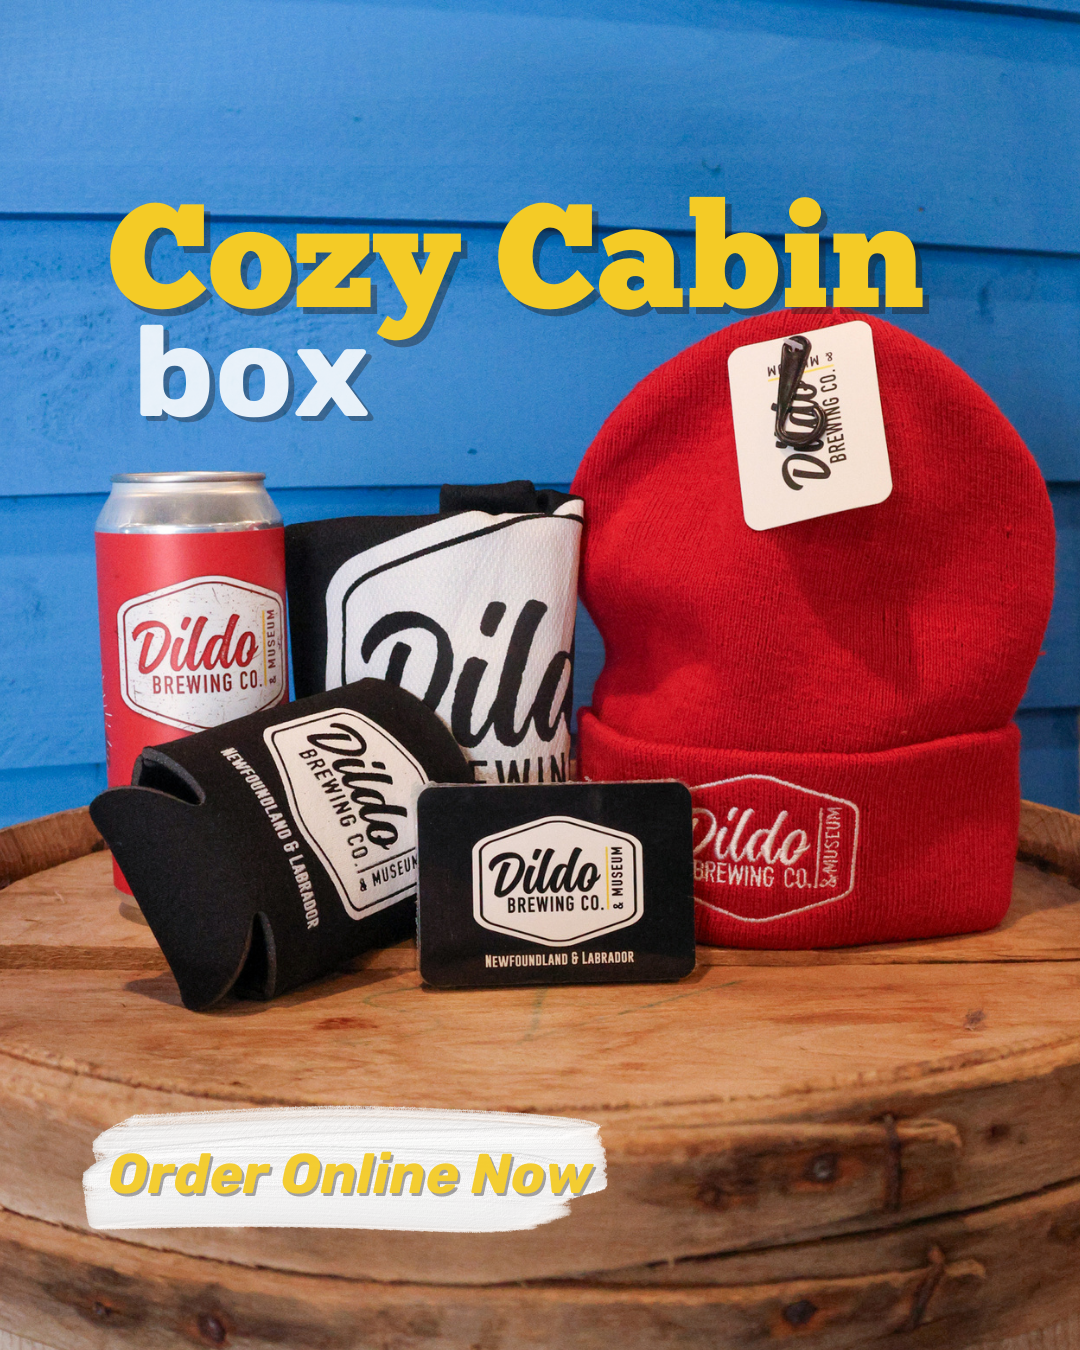 The Cozy Cabin Box